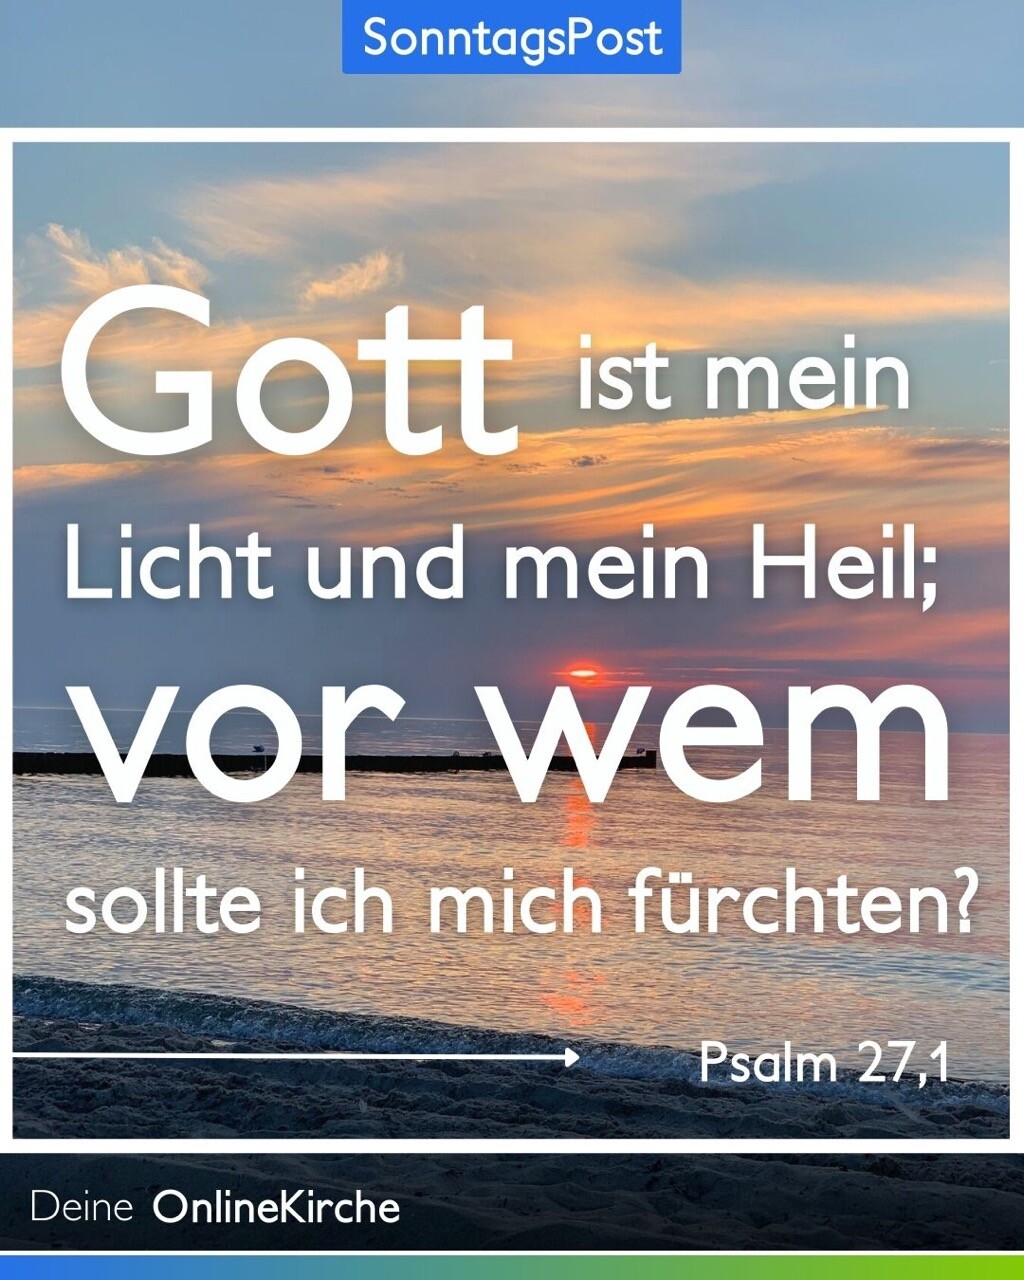 Gott ist mein Licht und mein Heil; vor wem sollte ich mich fürchten? 
Psalm 27,1 
Deine OnlineKirche